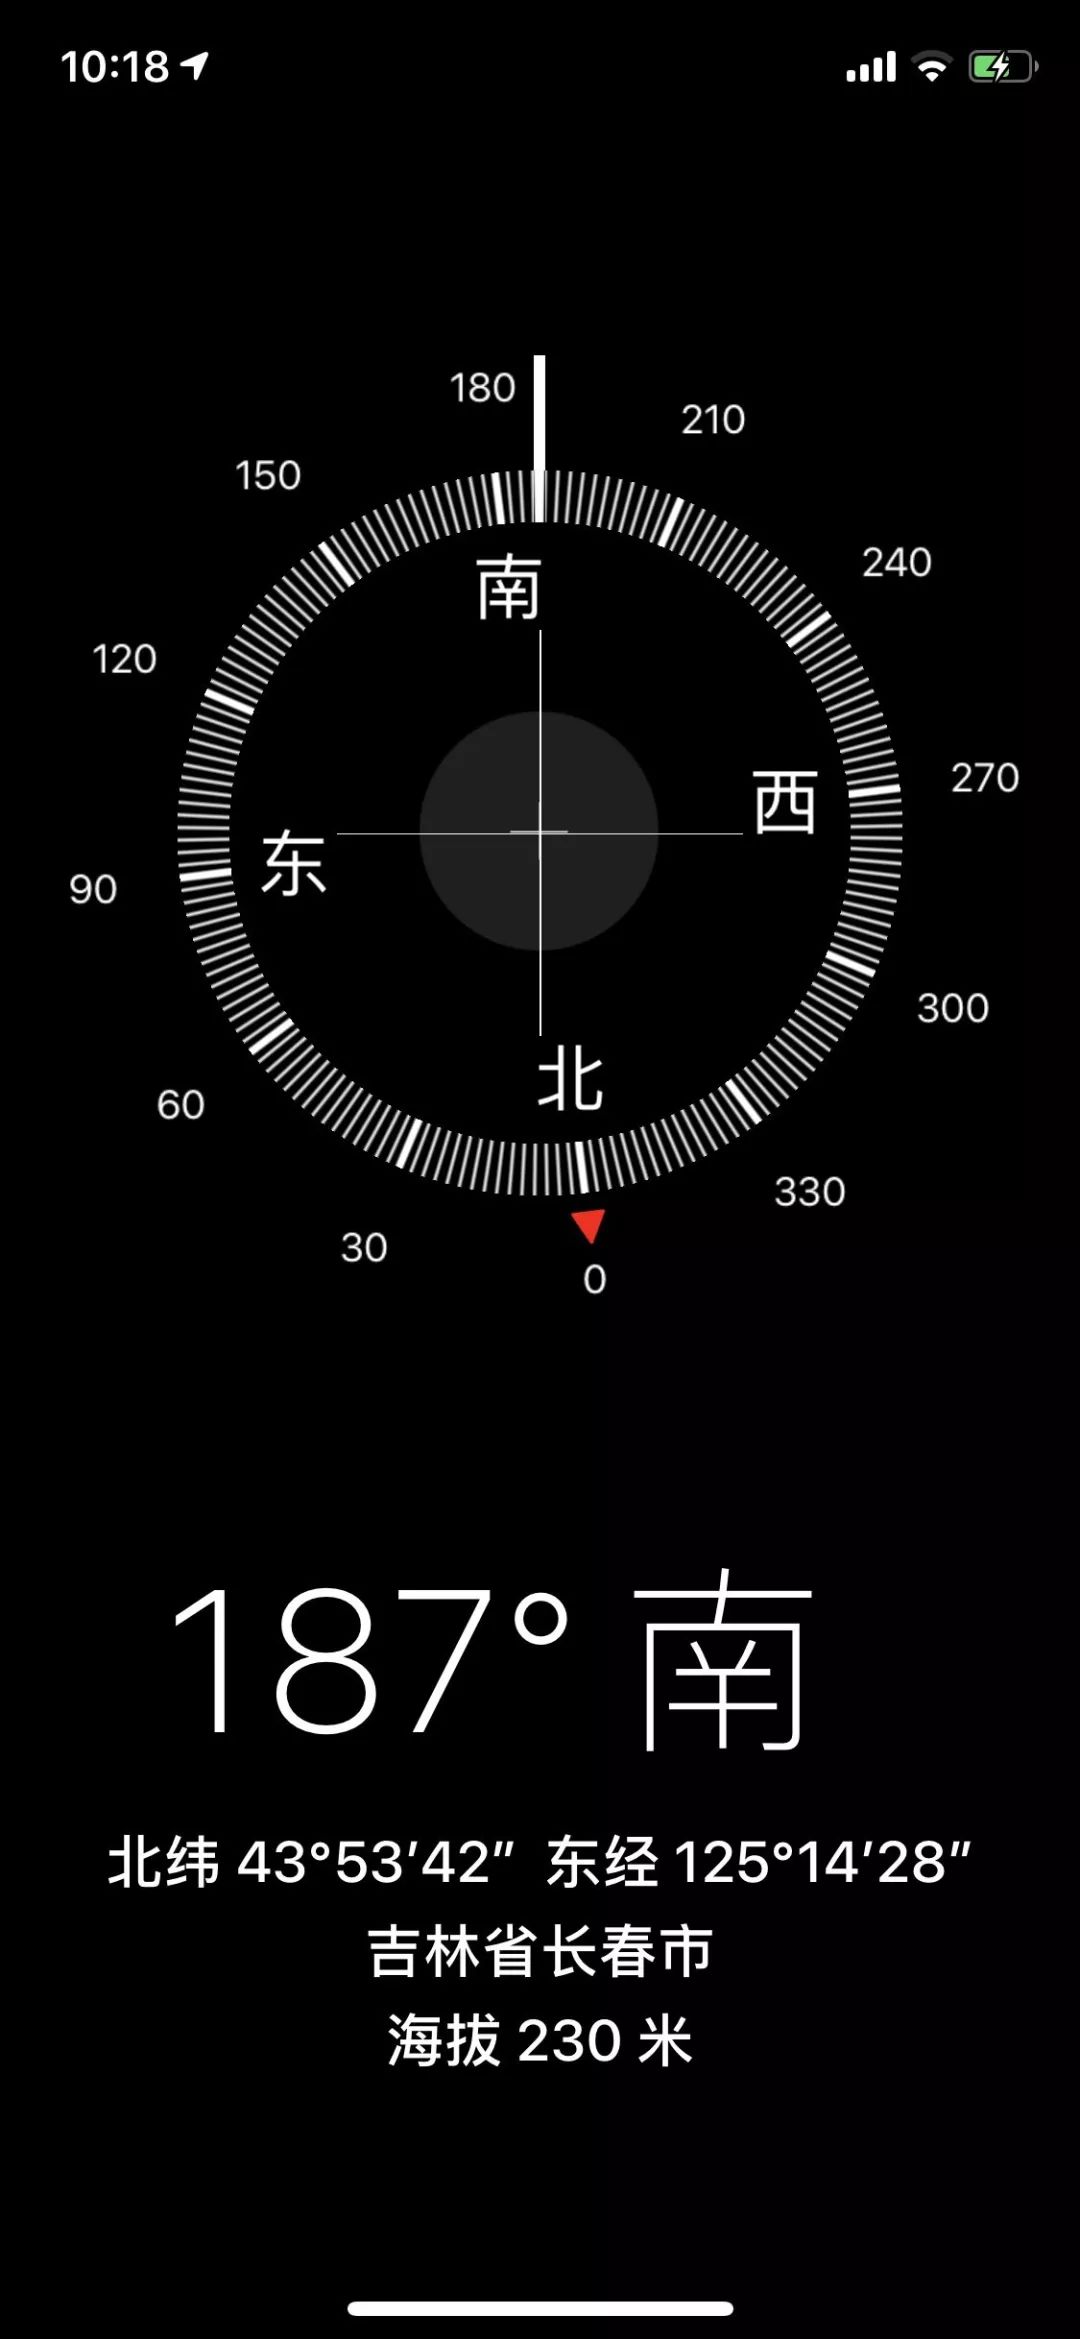 科普中国吉林行手机中的指南针是如何指南的